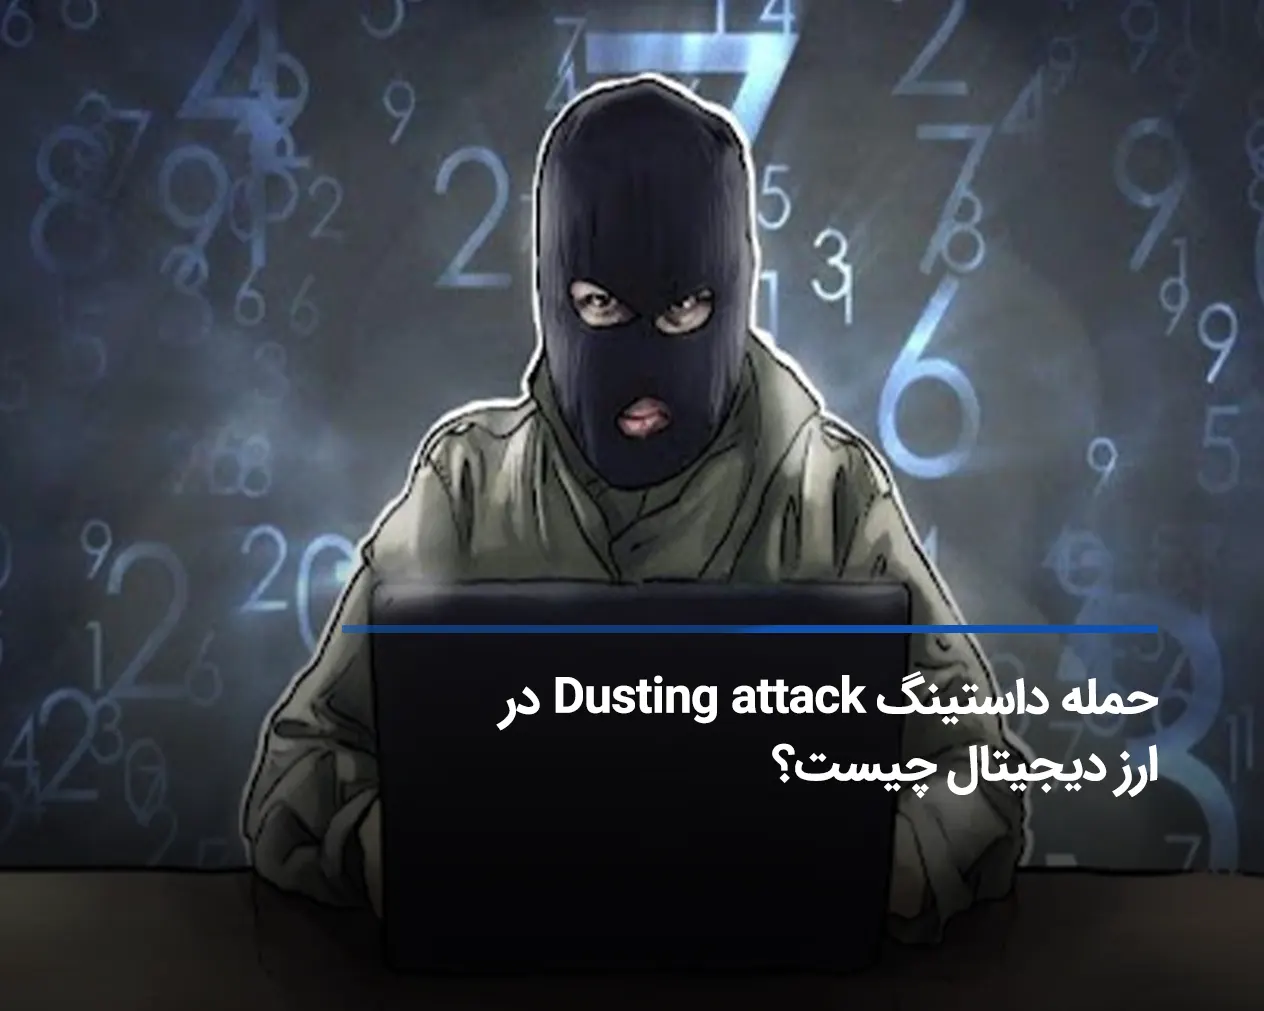 حمله داستینگ Dusting attack در ارز دیجیتال چیست؟